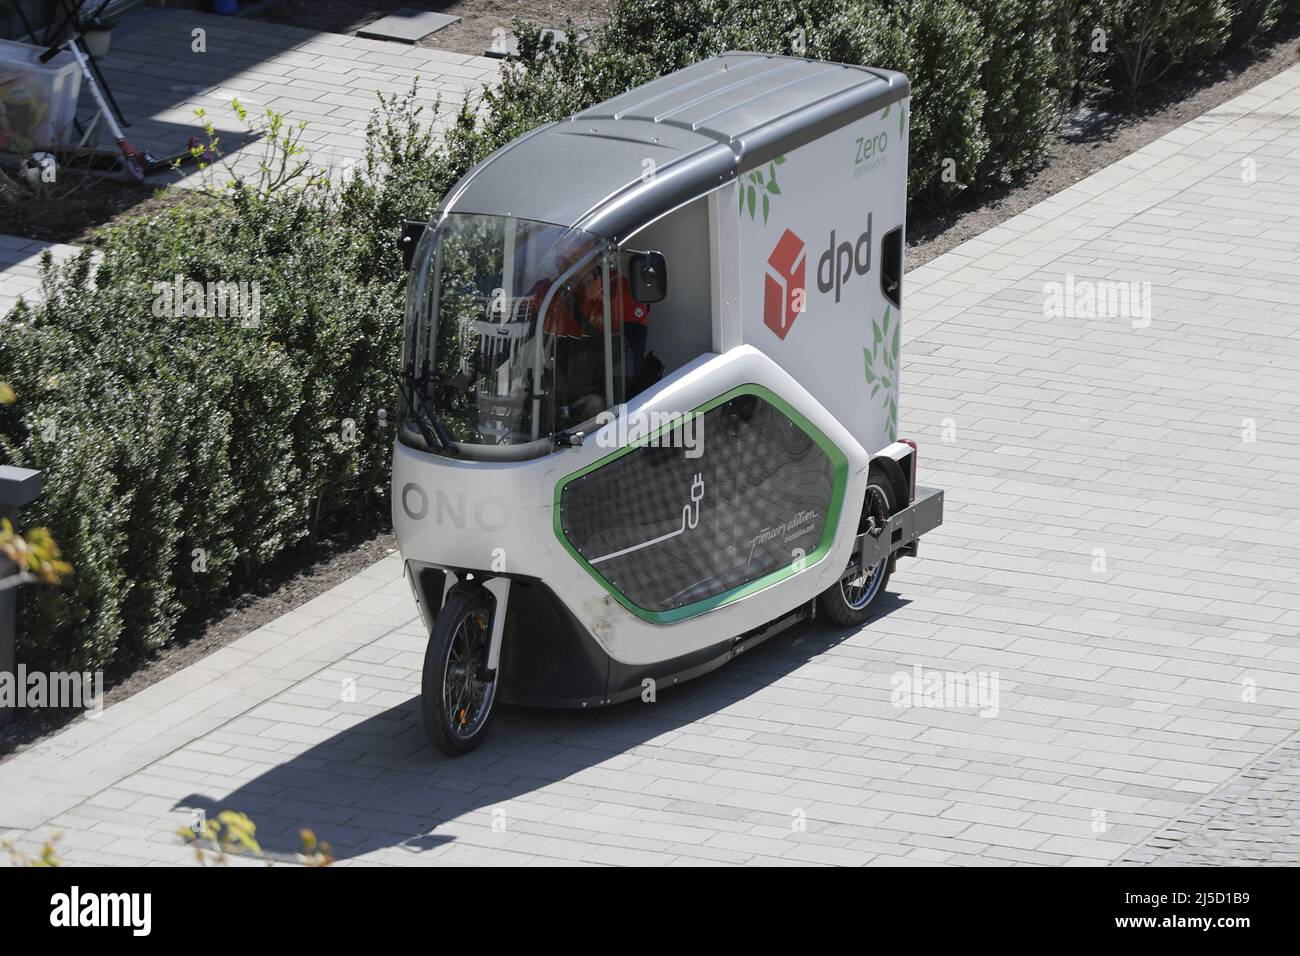 Berlin, 27.04.2021 - le service de livraison de colis dpd livre des colis avec un véhicule de livraison de e-bike [traduction automatique] Banque D'Images